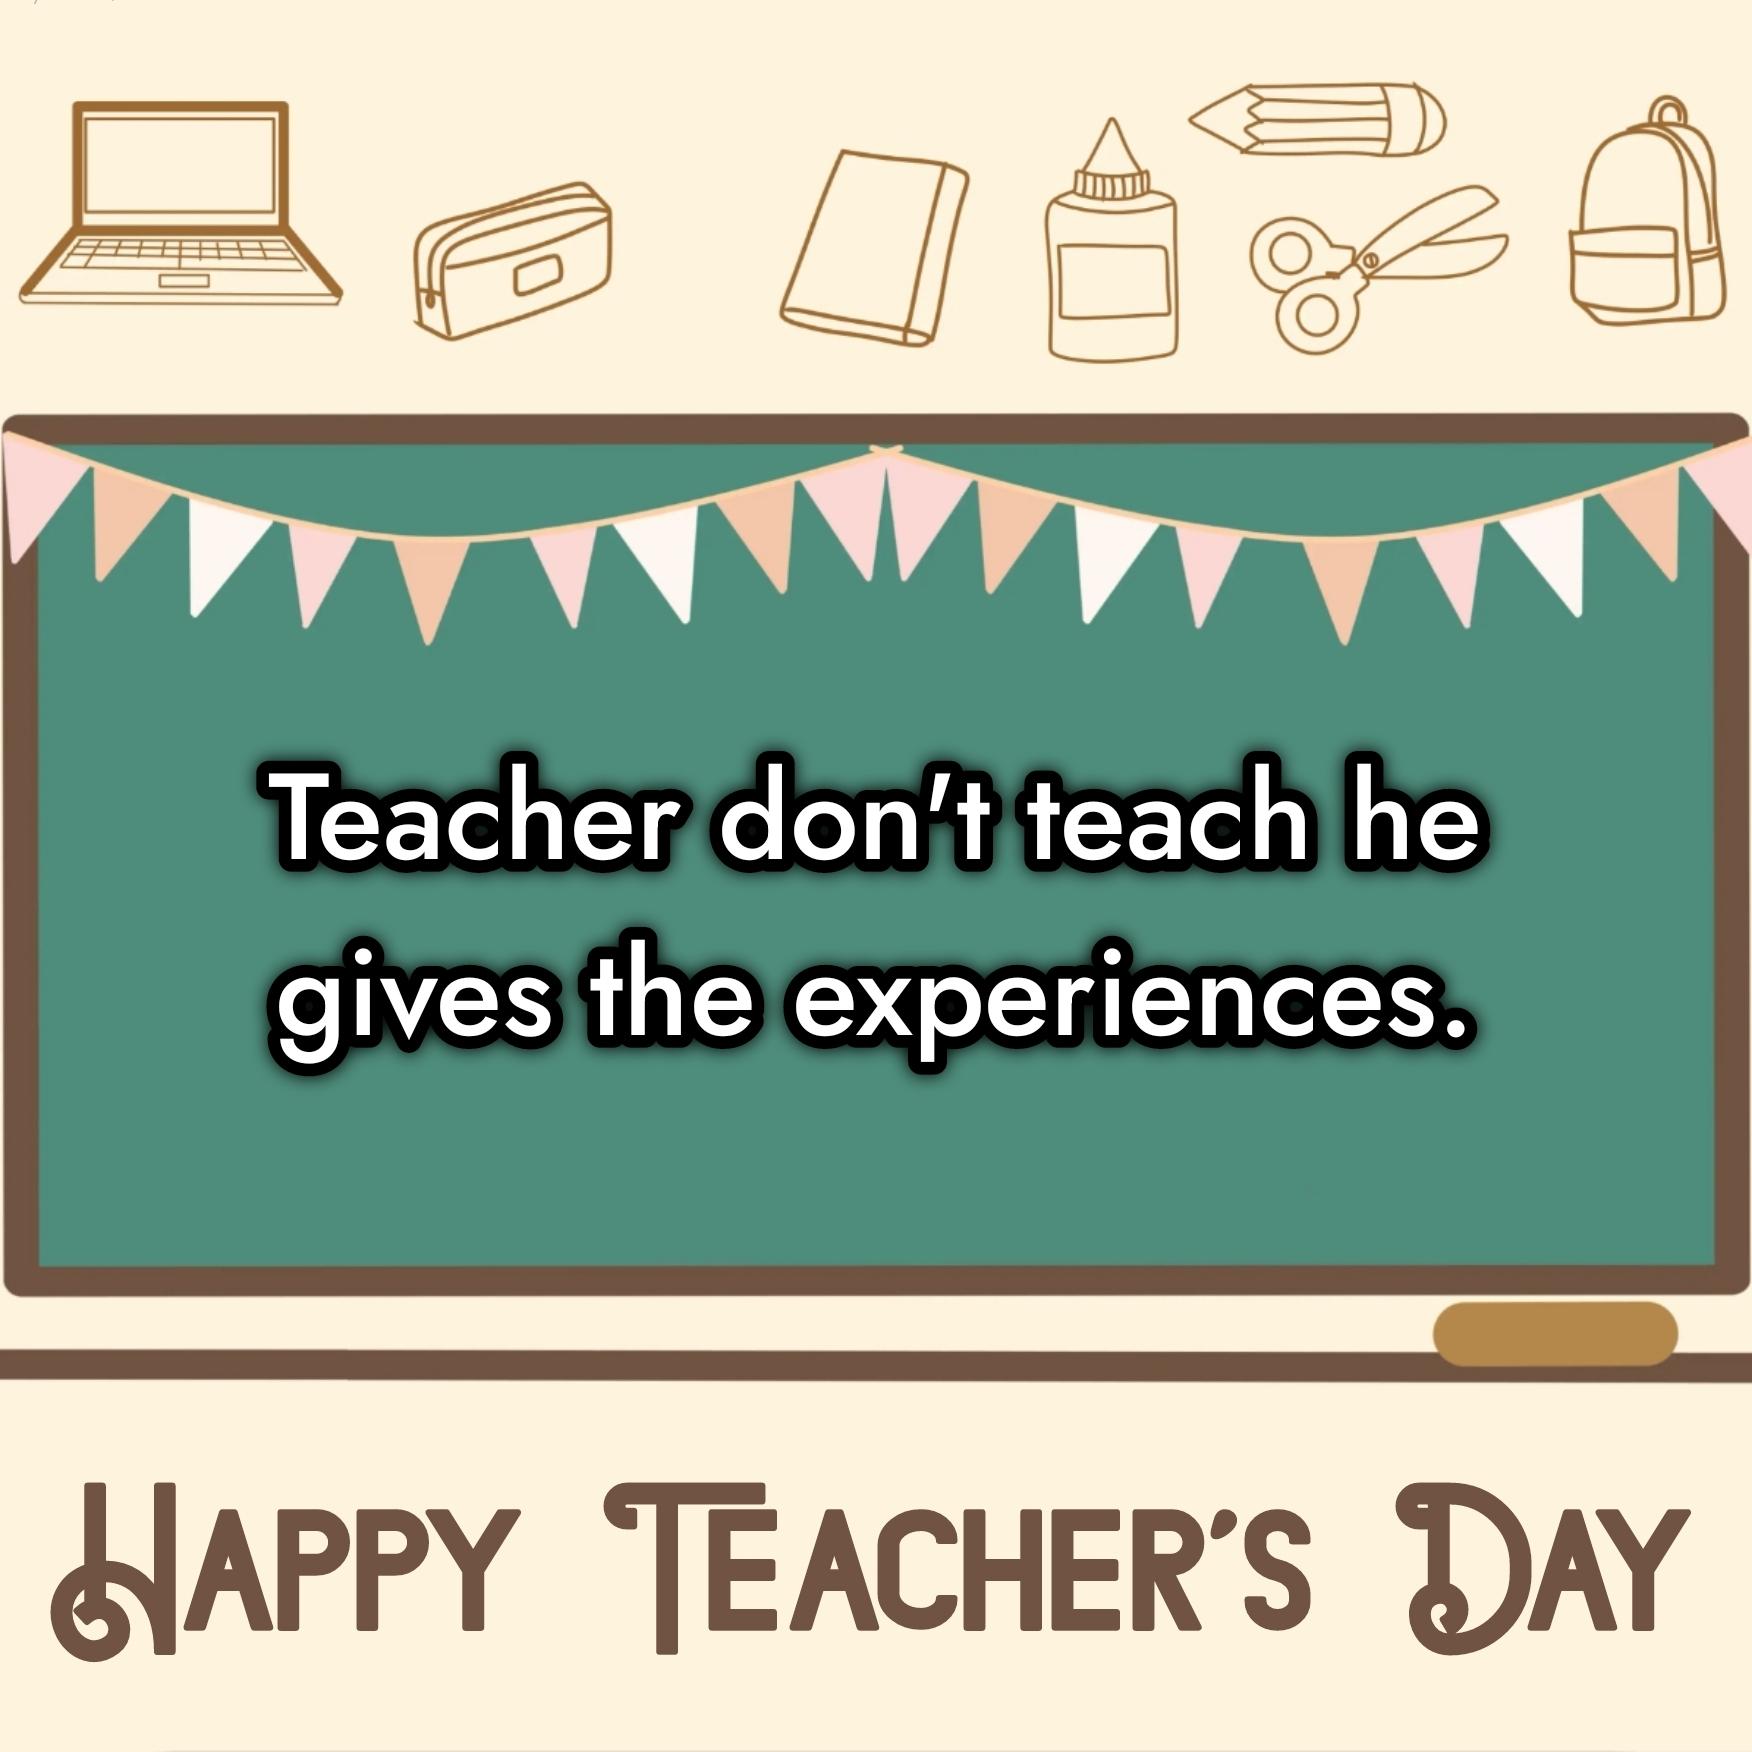 Teacher don't teach he gives the experiences